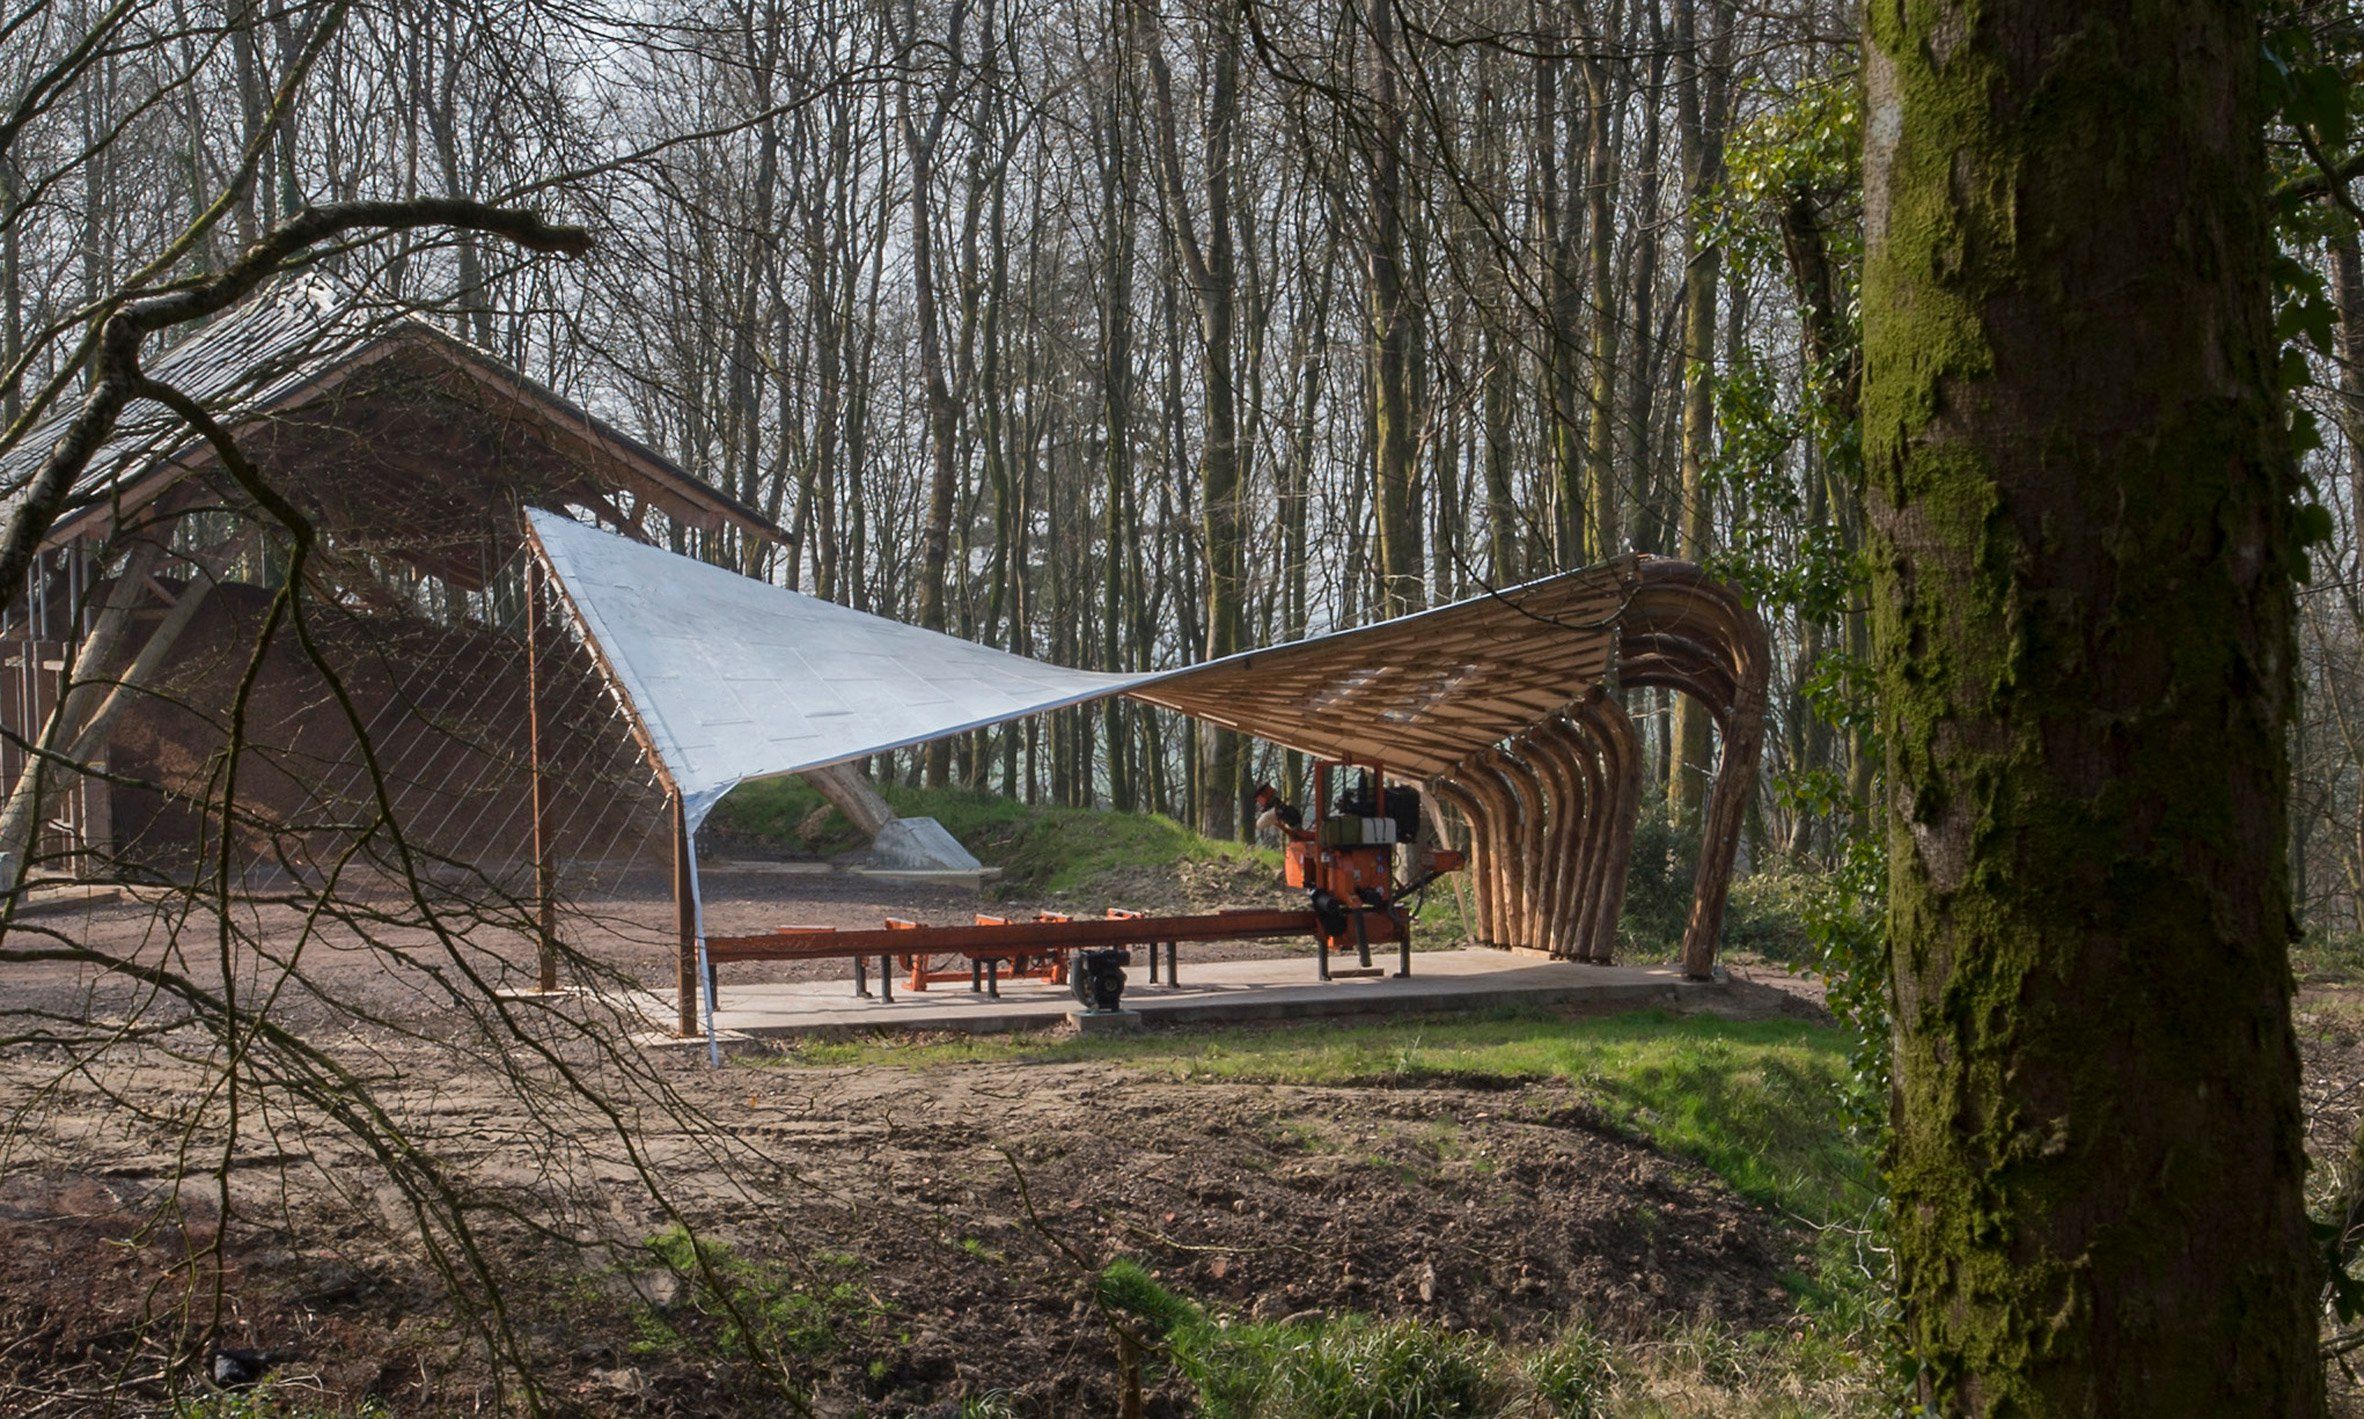 Japanischer Garten Freiburg Schön Sawmill Shelter by Architectural association Students